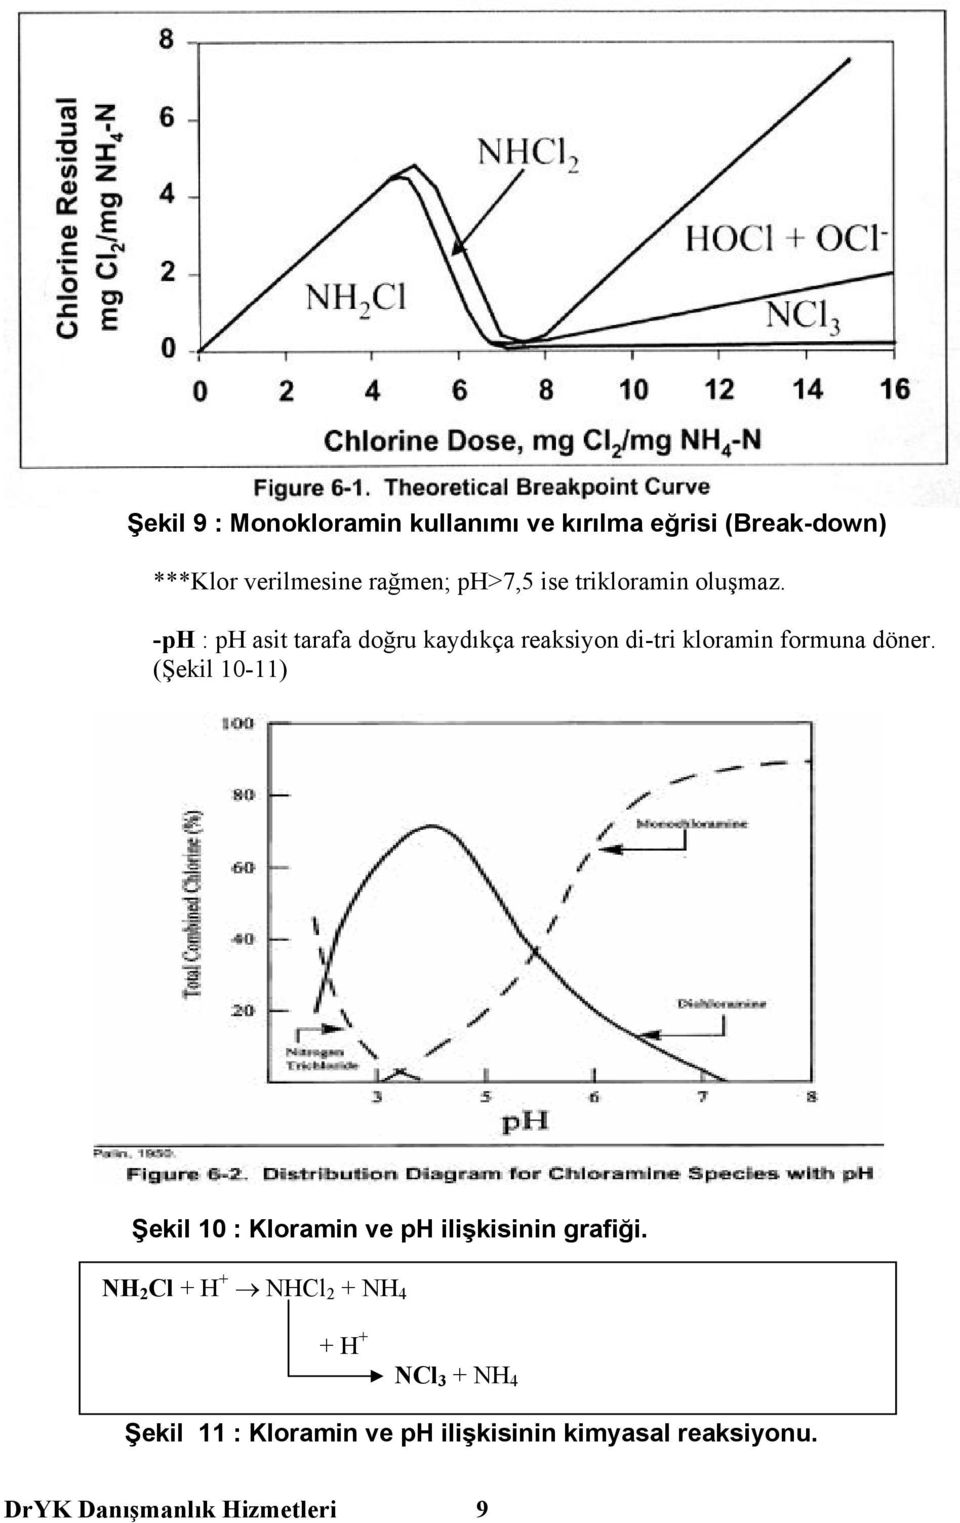 -ph : ph asit tarafa doğru kaydıkça reaksiyon di-tri kloramin formuna döner.